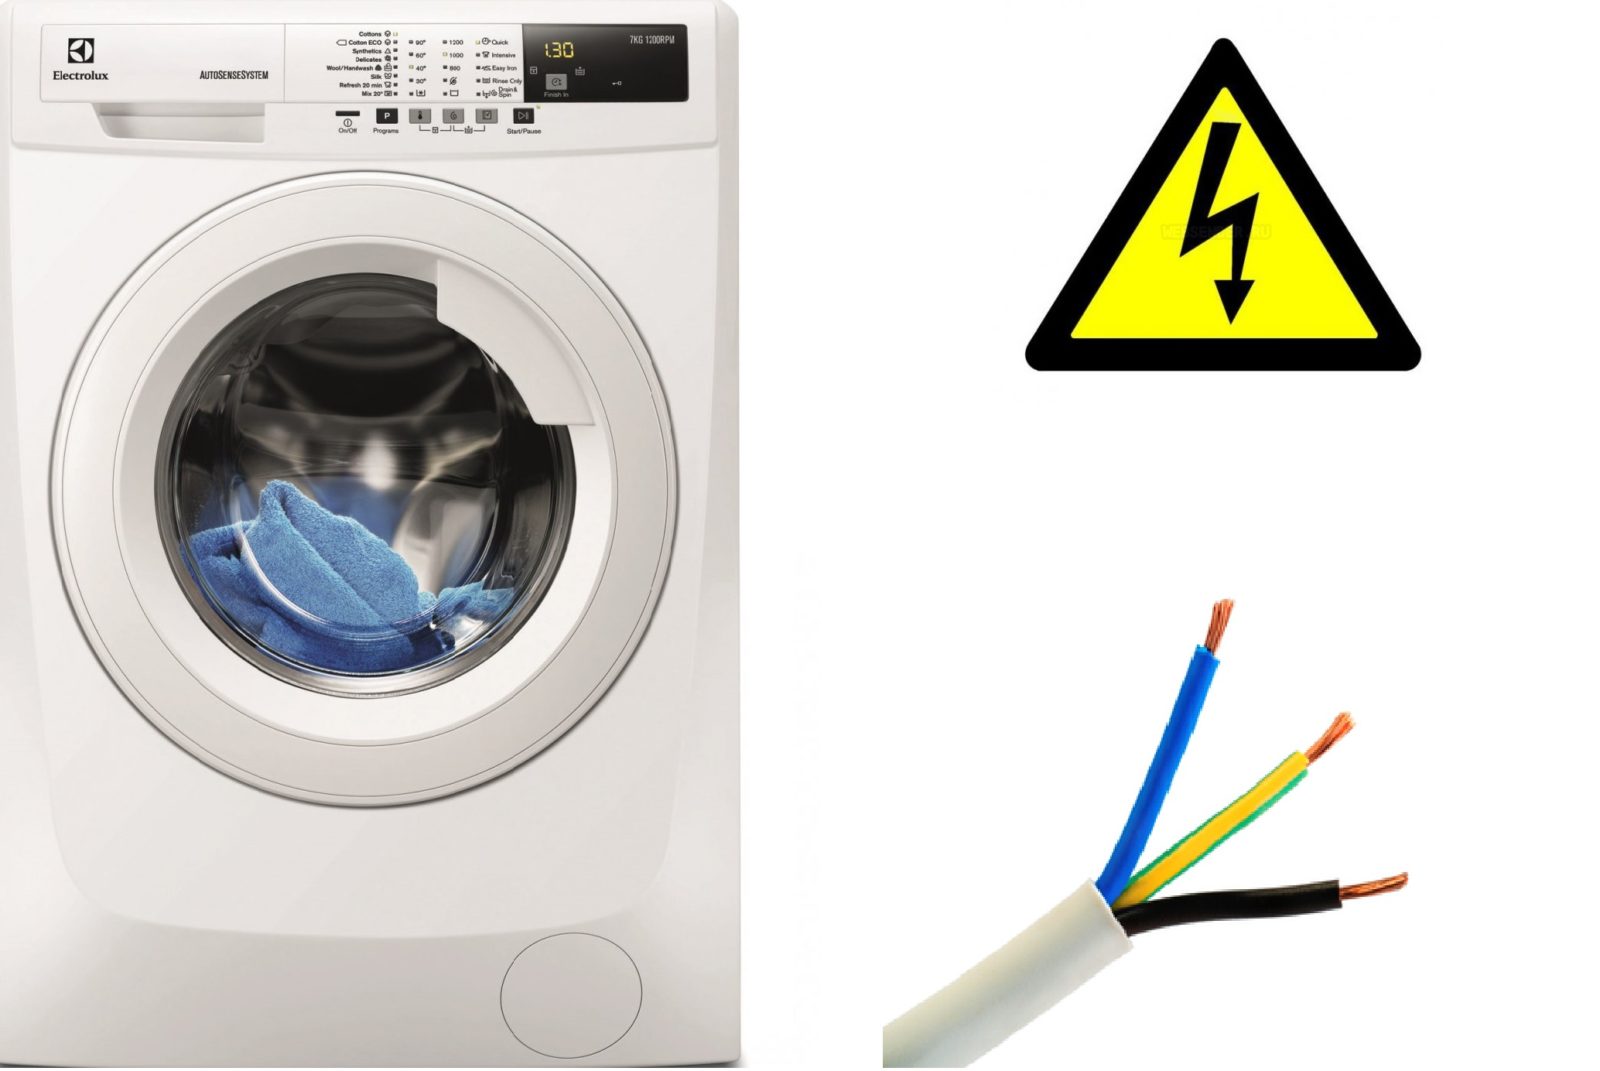 หน้าตัดลวดสำหรับเชื่อมต่อเครื่องซักผ้า